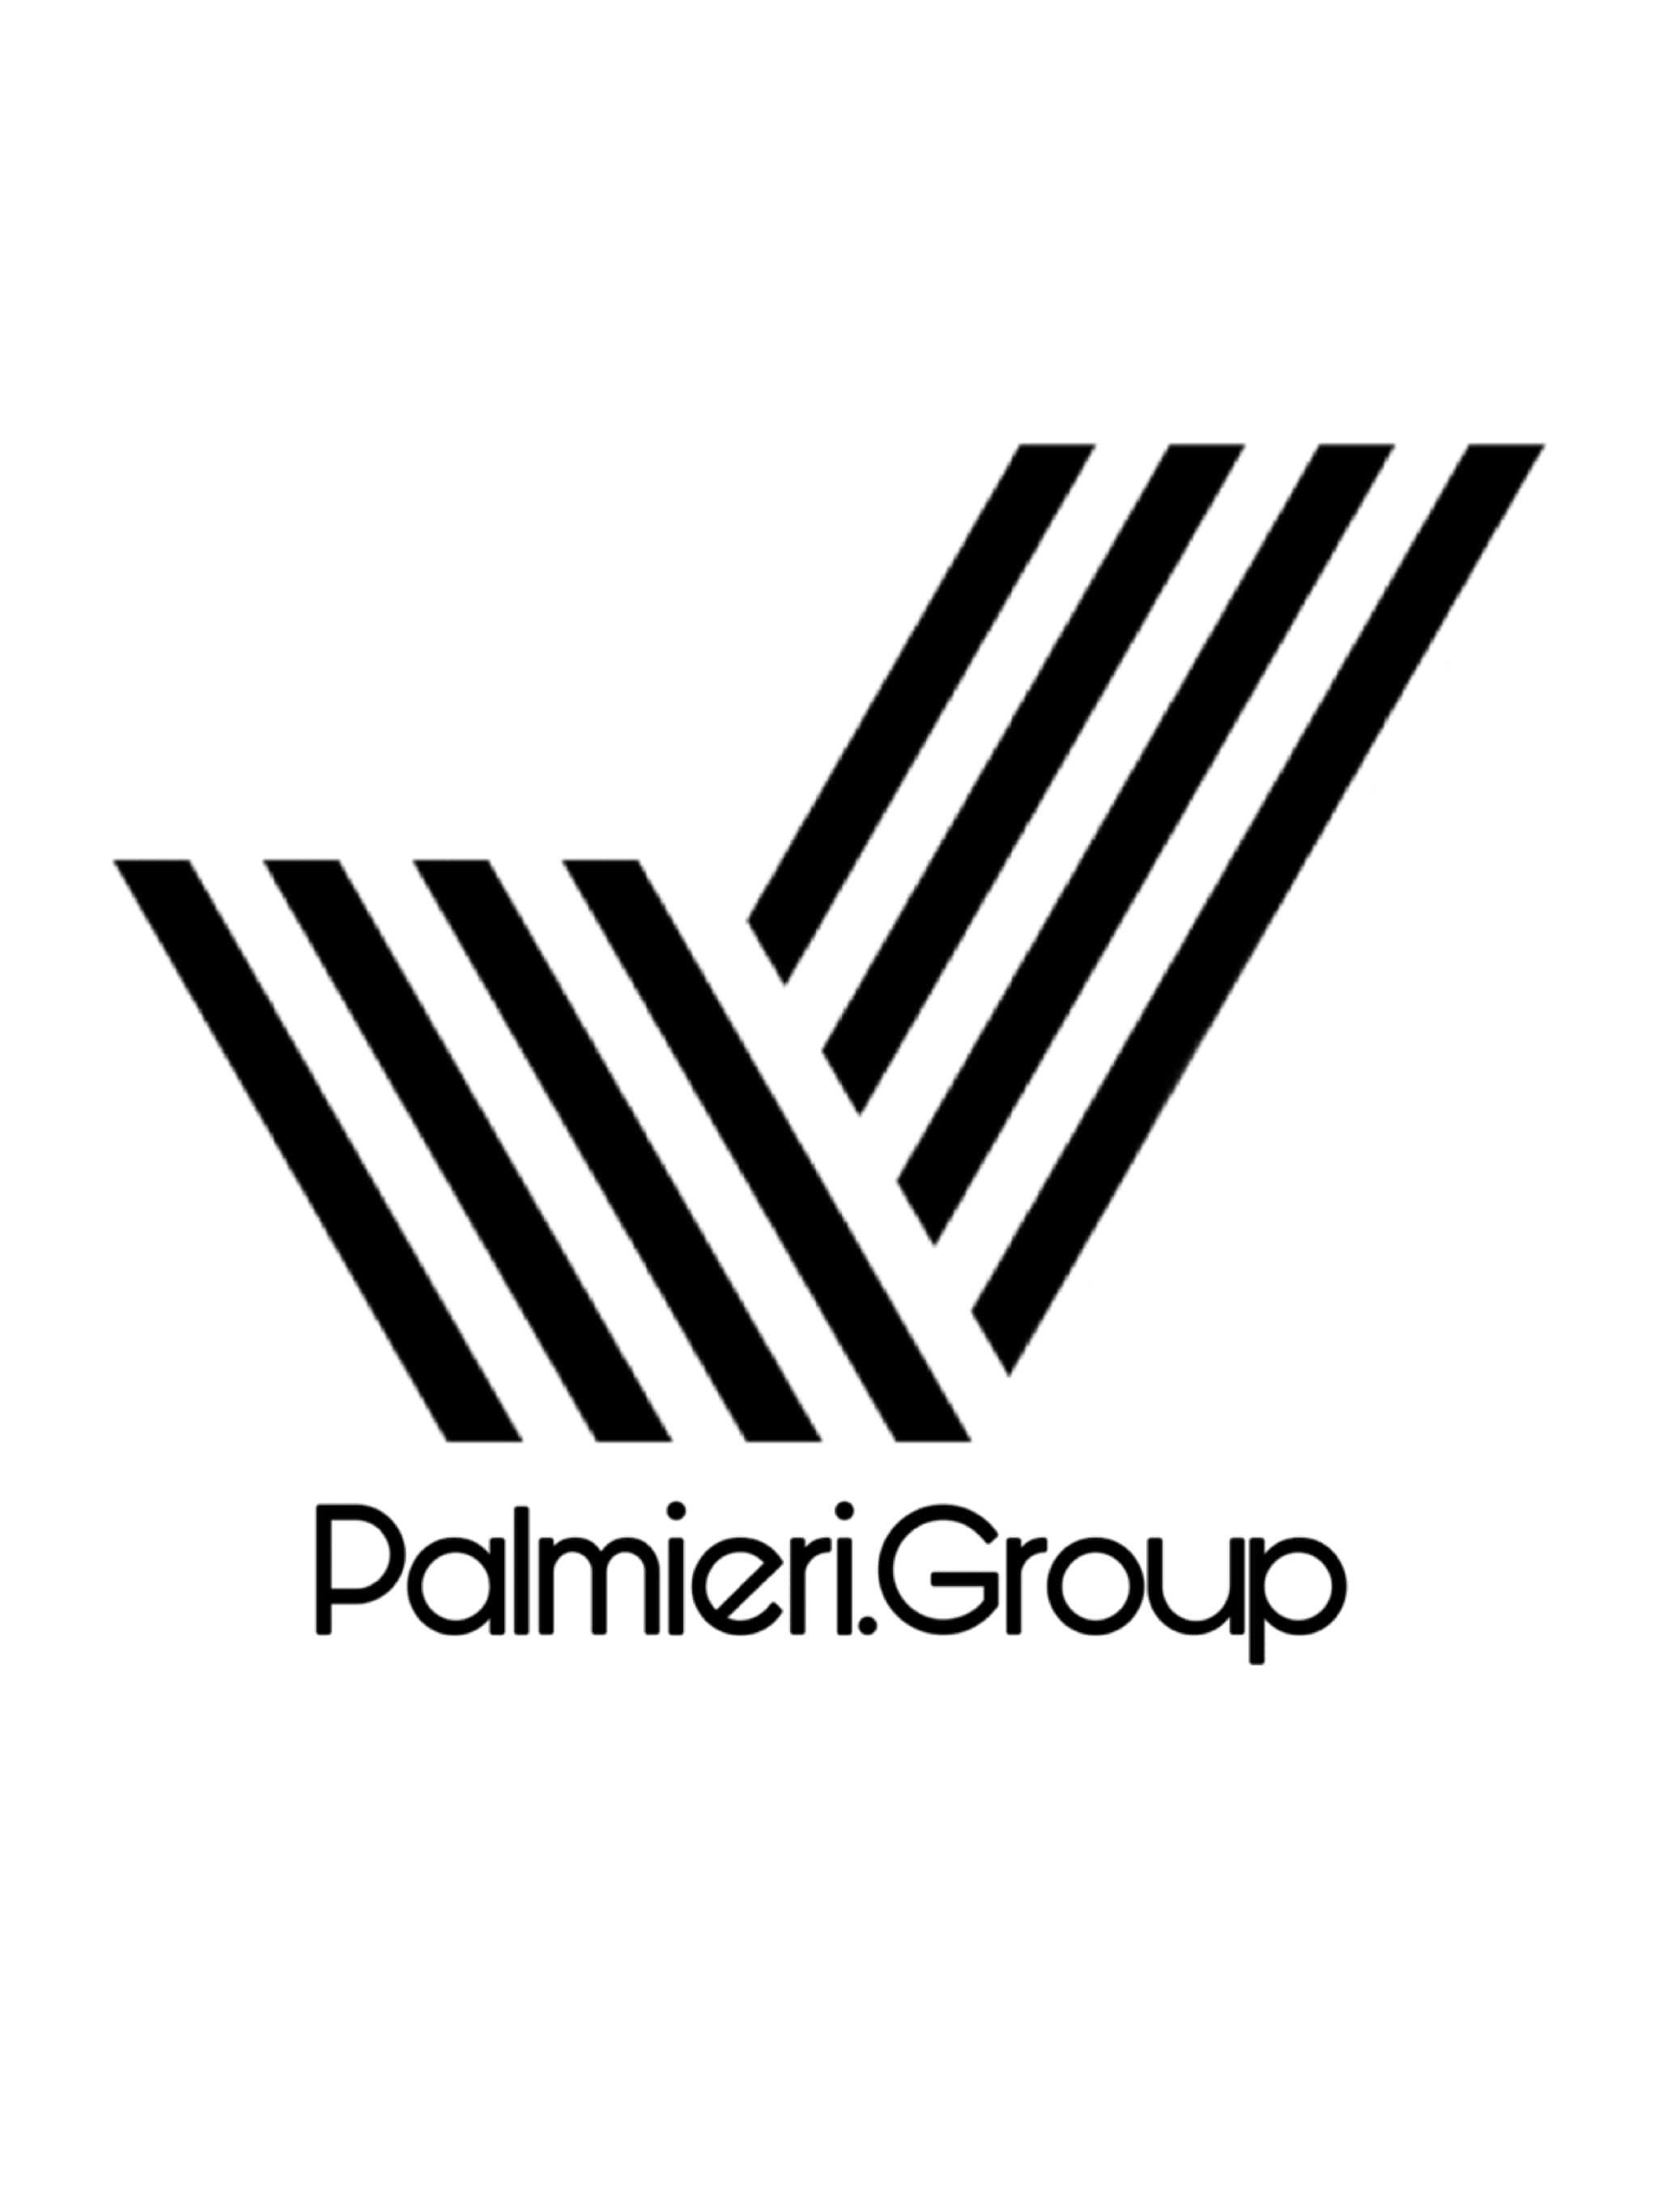 Palmieri.Group